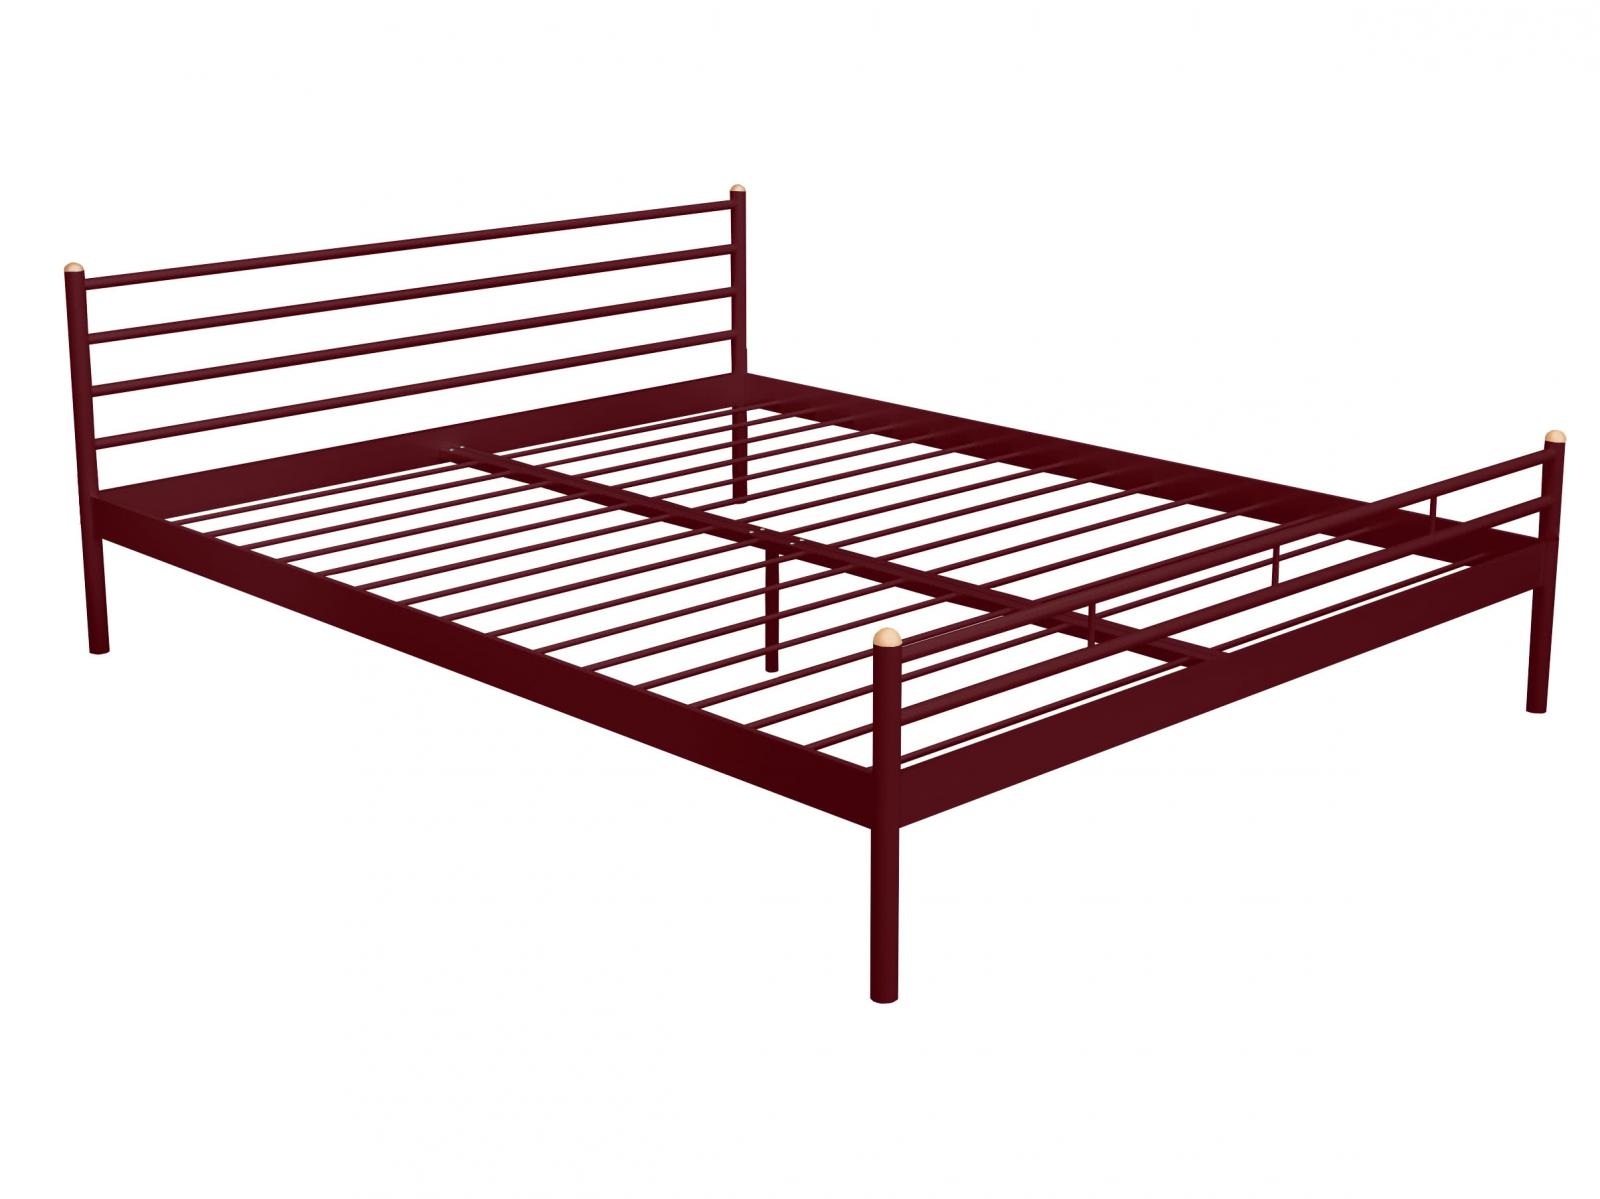 Купить кровать Alitte Кровать Alitte Charlotte, бордо 90 х 200 см бордо дешево на официальном сайте